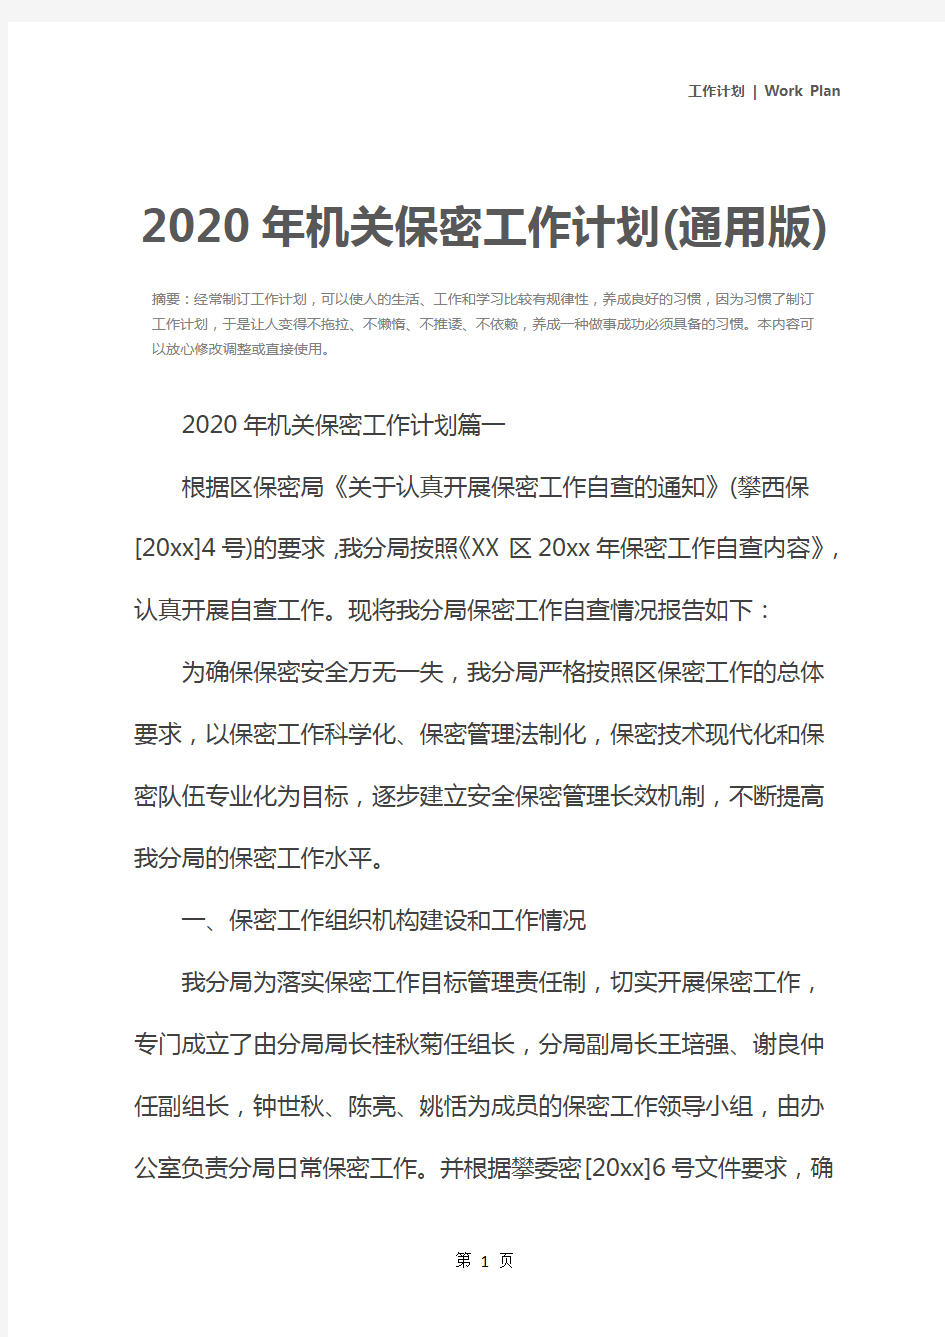 2020年机关保密工作计划(通用版)